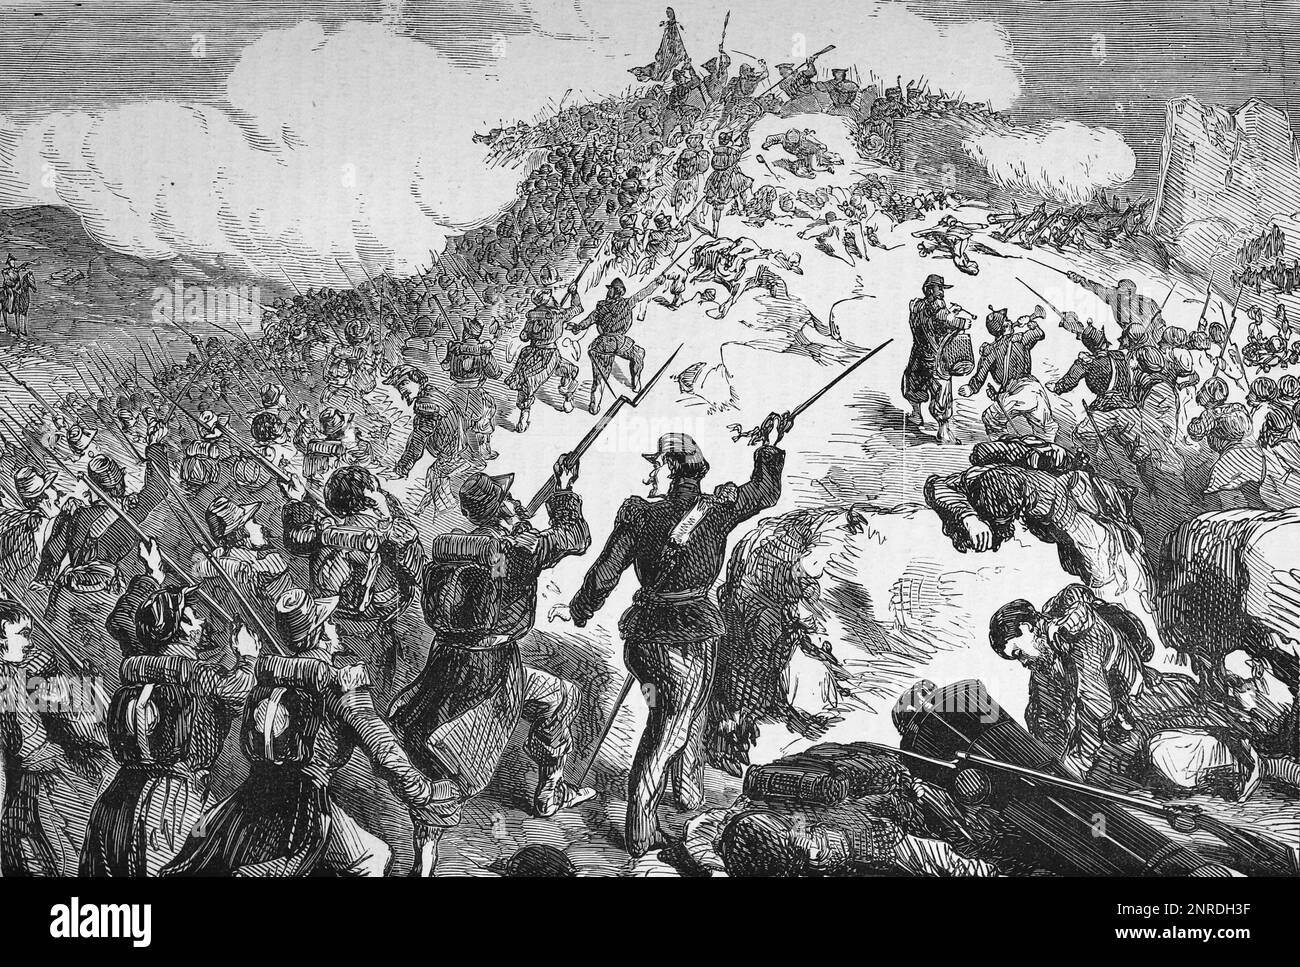 La capture française de Mamelon pendant le siège de Sébastopol, guerre de Crimée, 6-9 juin 1855. Illustration en noir et blanc Banque D'Images